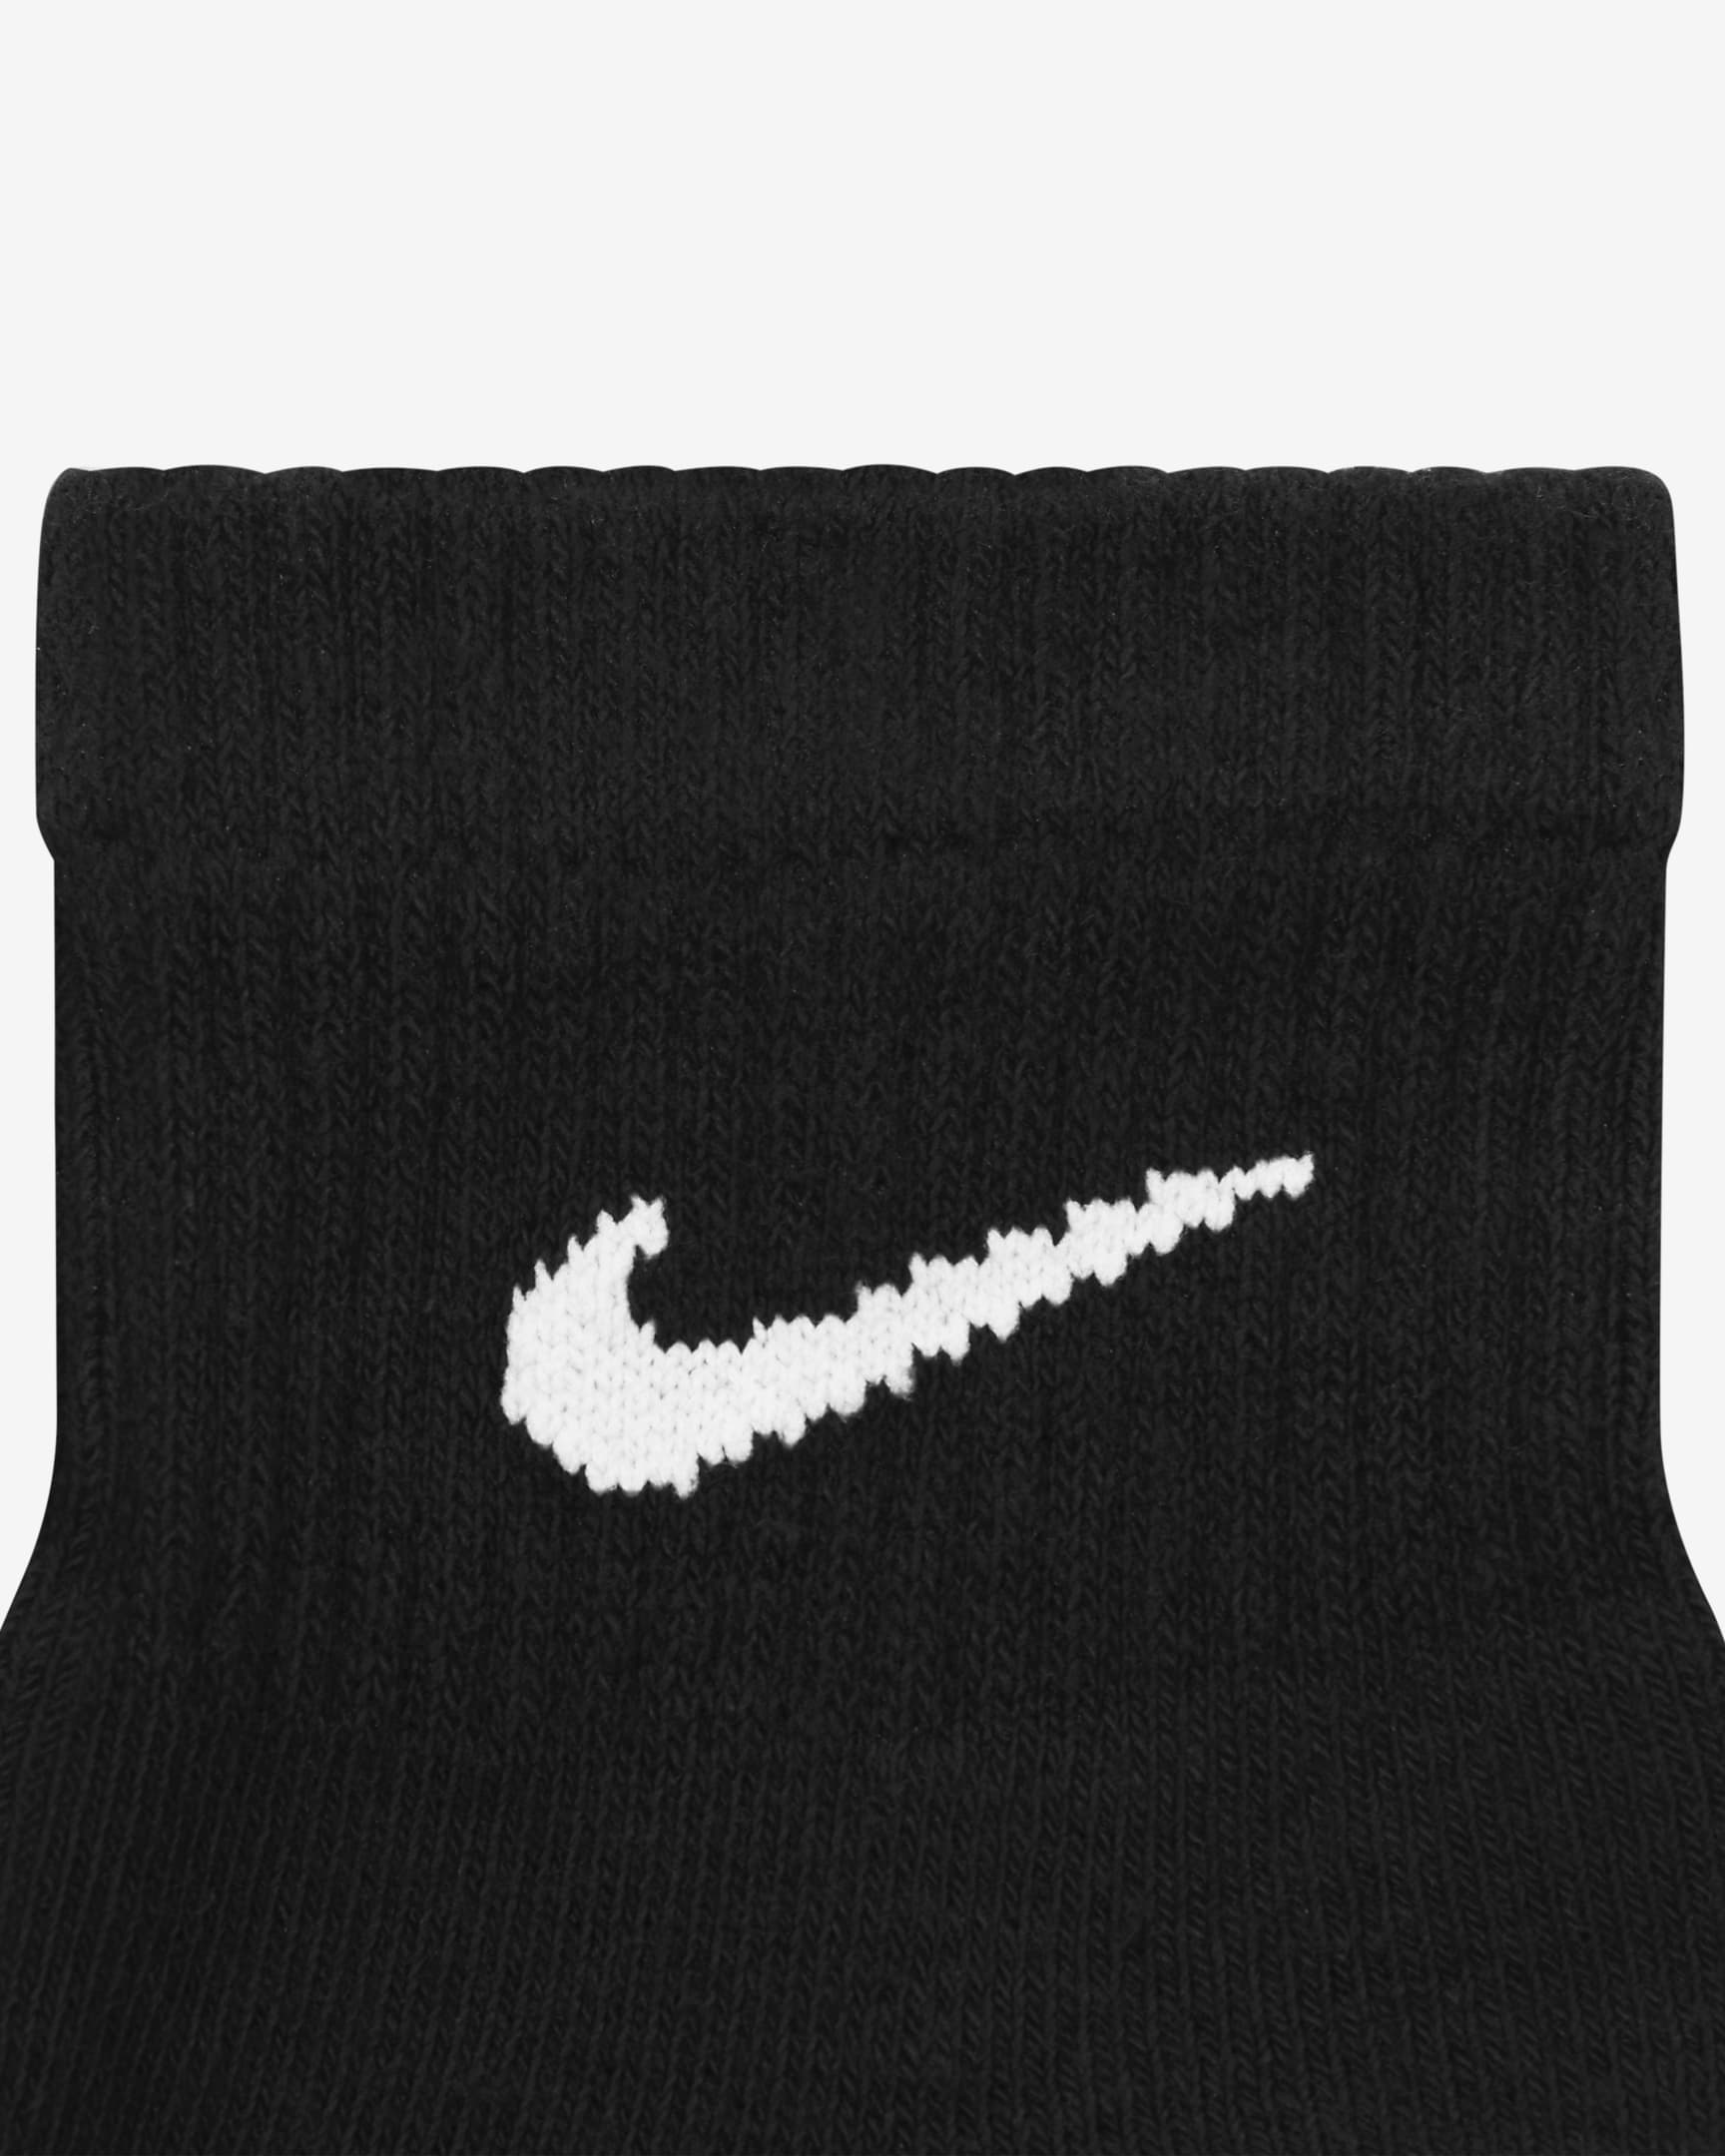 Nike Everyday Plus Cushioned Training Ankle Socks (6 Pairs) - Black/White